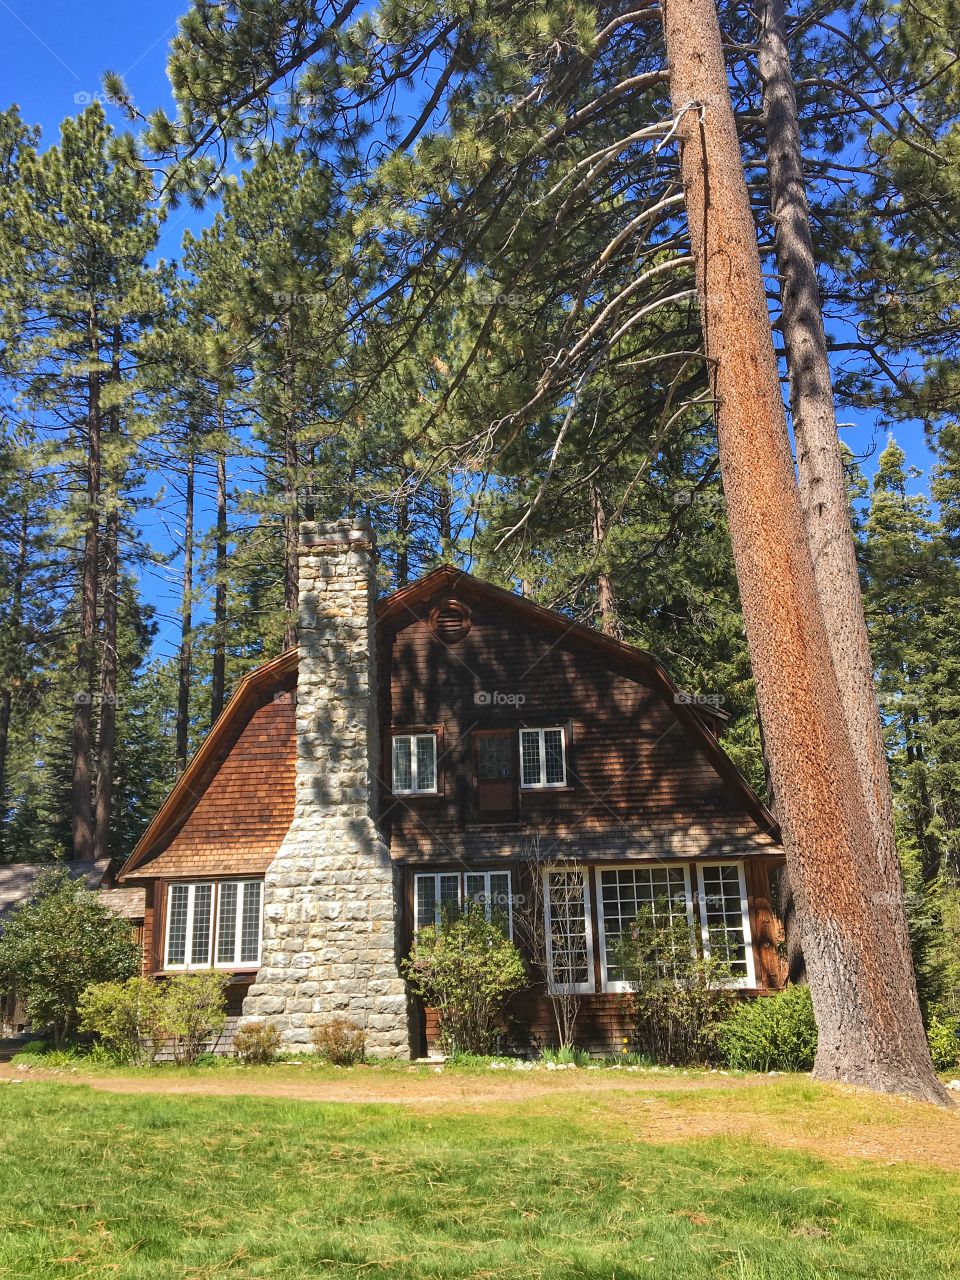 Lake Tahoe, California 